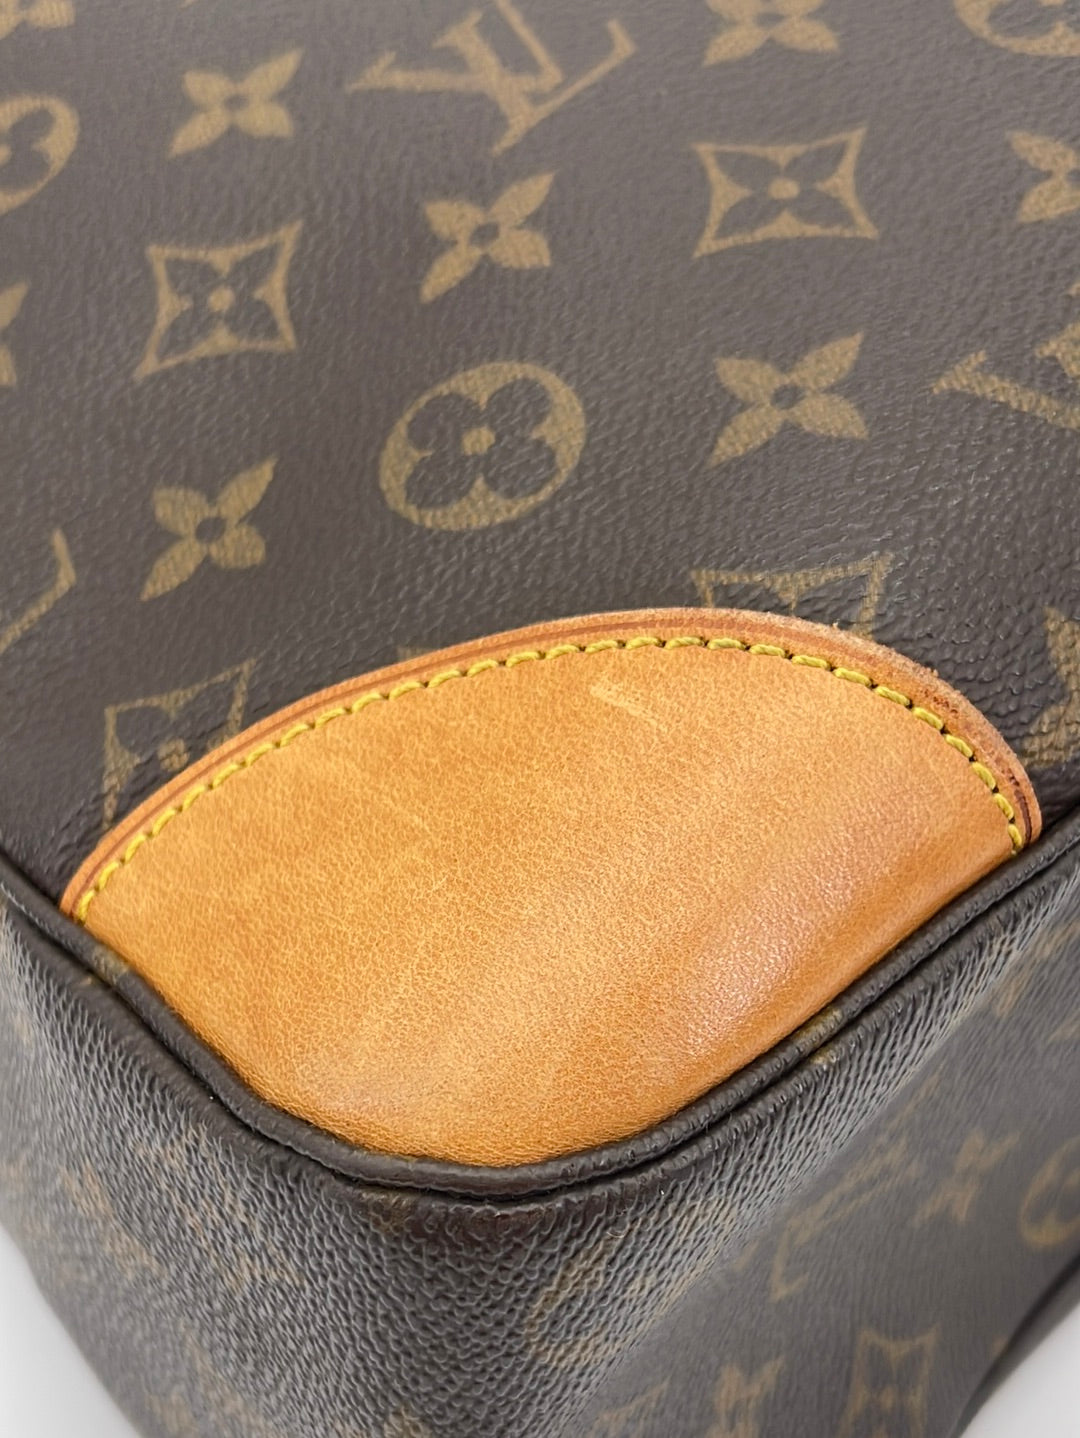 Louis Vuitton Boulogne Handbag 310682